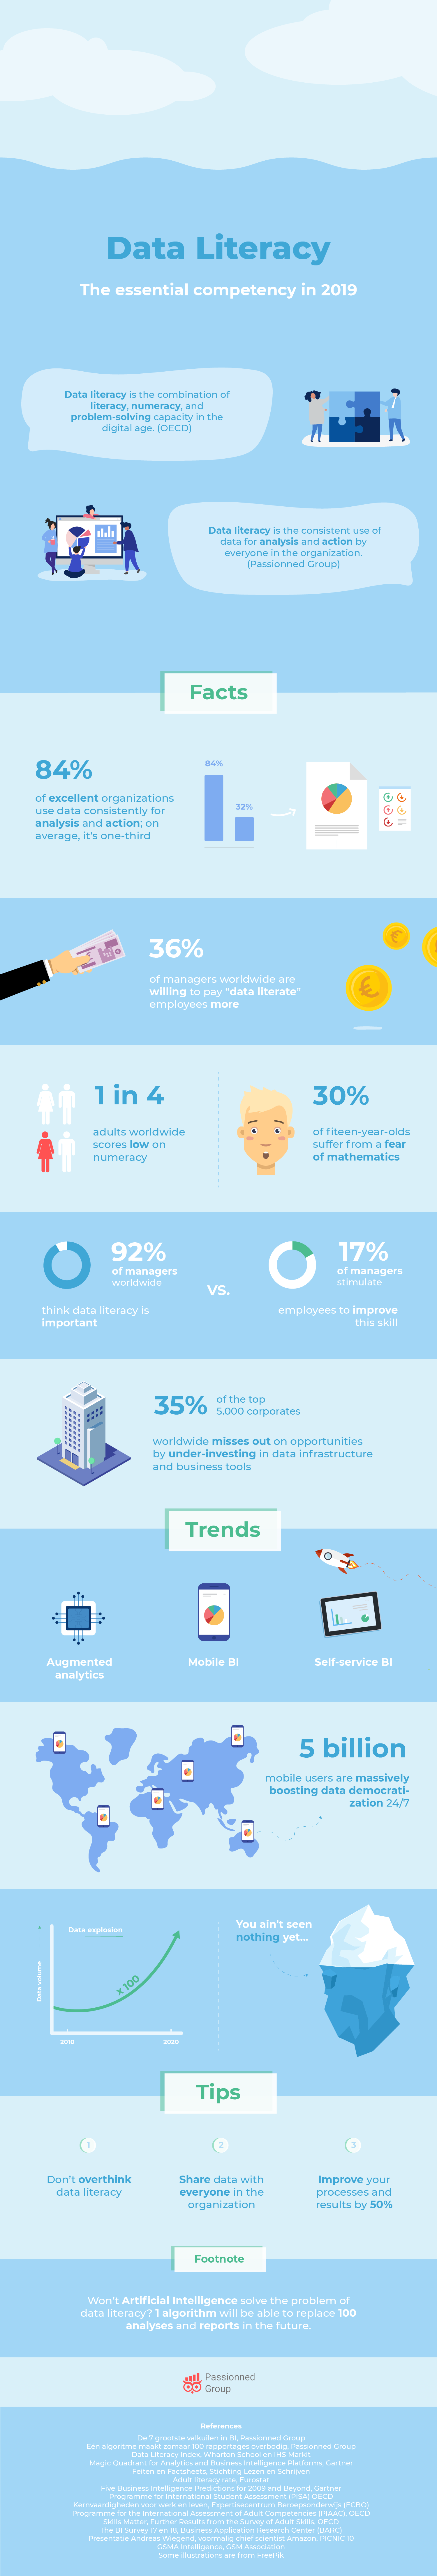 Data literacy infographic